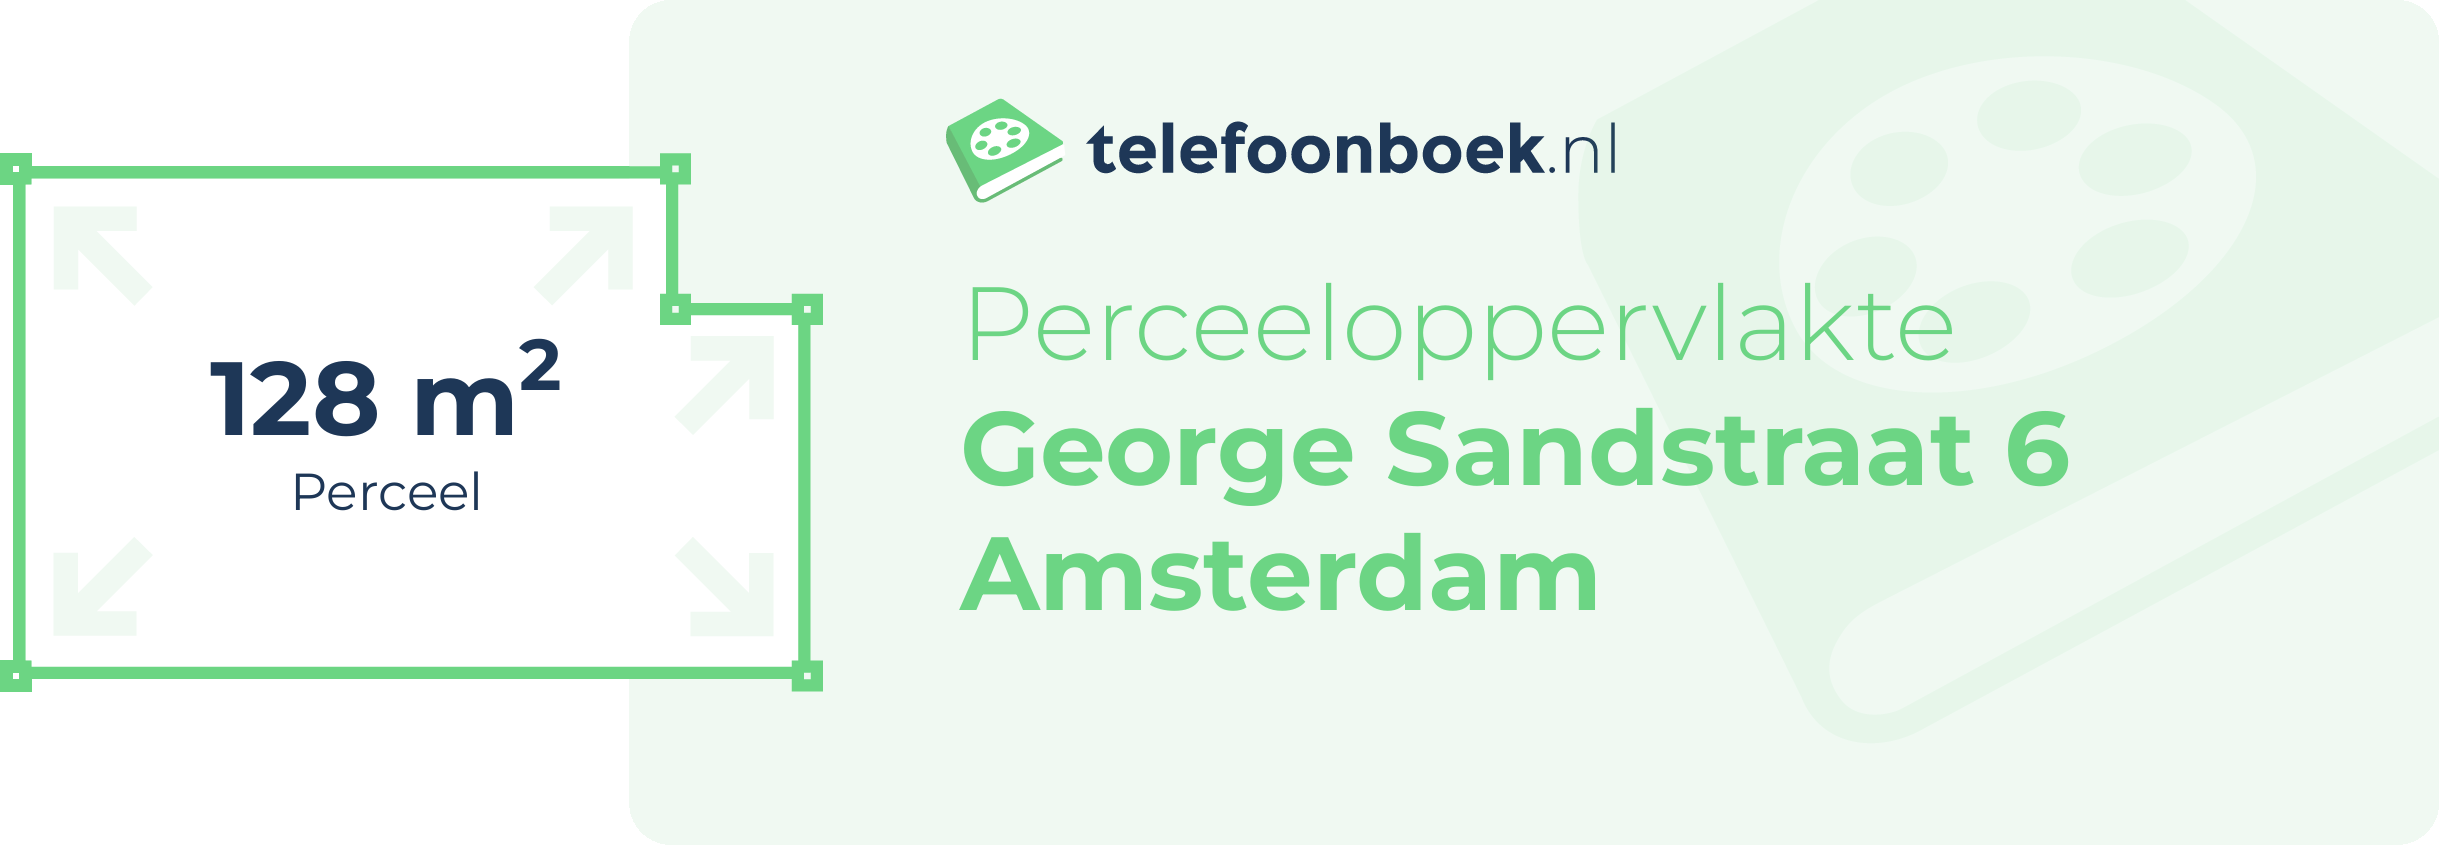 Perceeloppervlakte George Sandstraat 6 Amsterdam